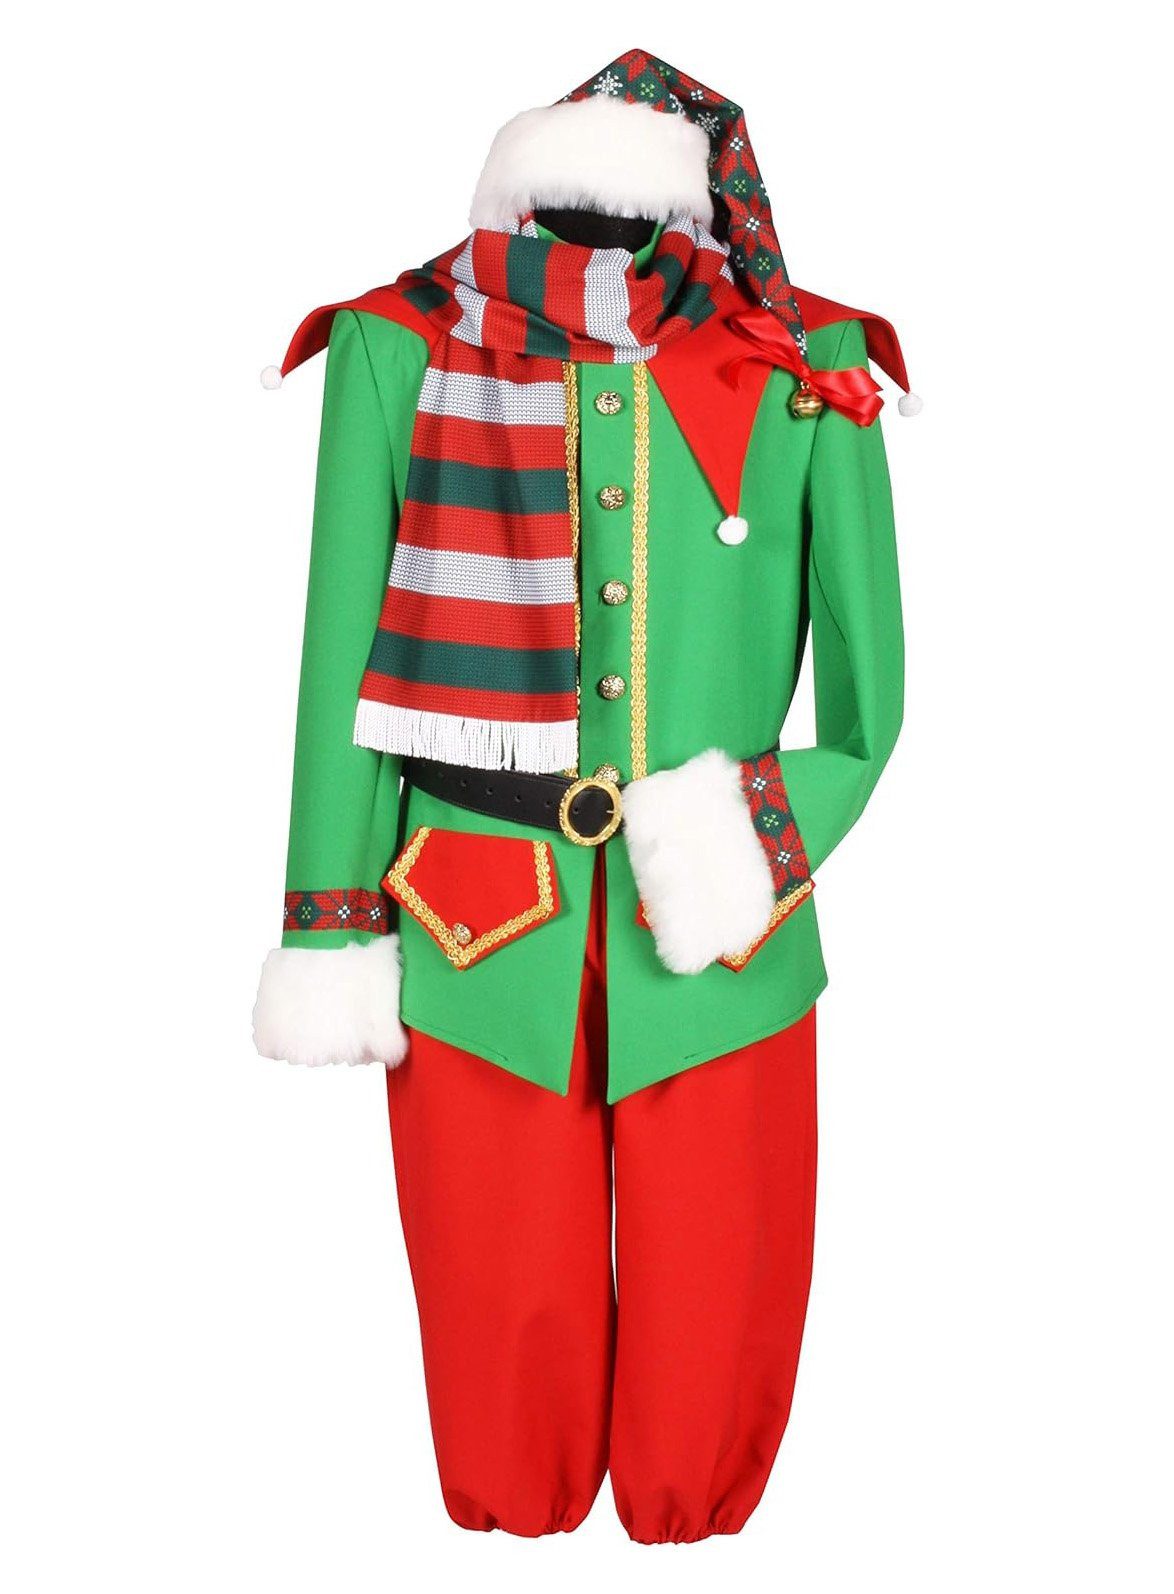 thetru Kostüm Festlicher Weihnachtself Kostüm, Schmuckes Wichtelkostüm für die Weihnachtszeit